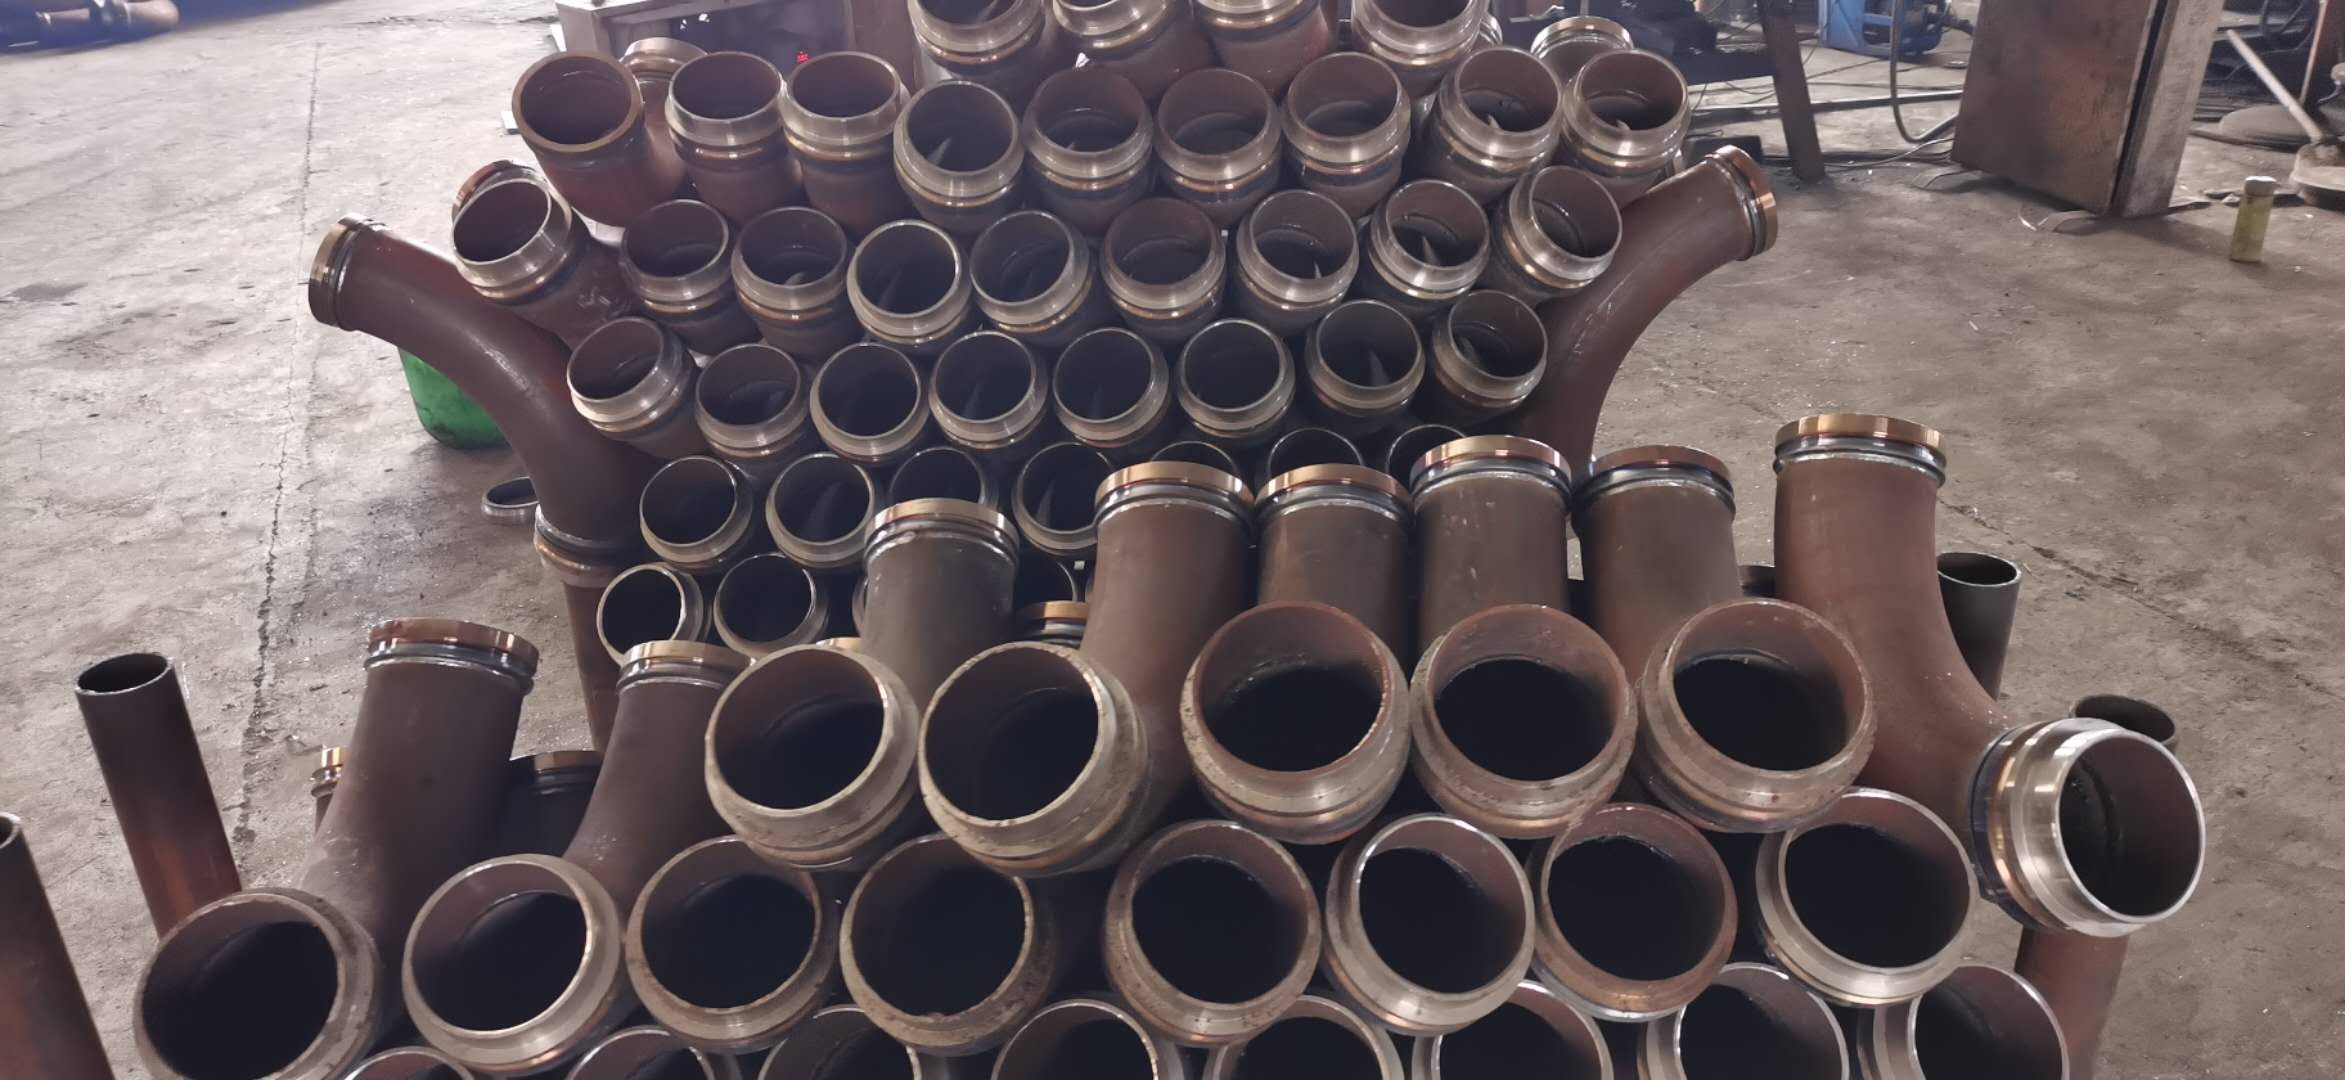 地泵管 各种配件 泵管及各种配件 布料机专用泵管